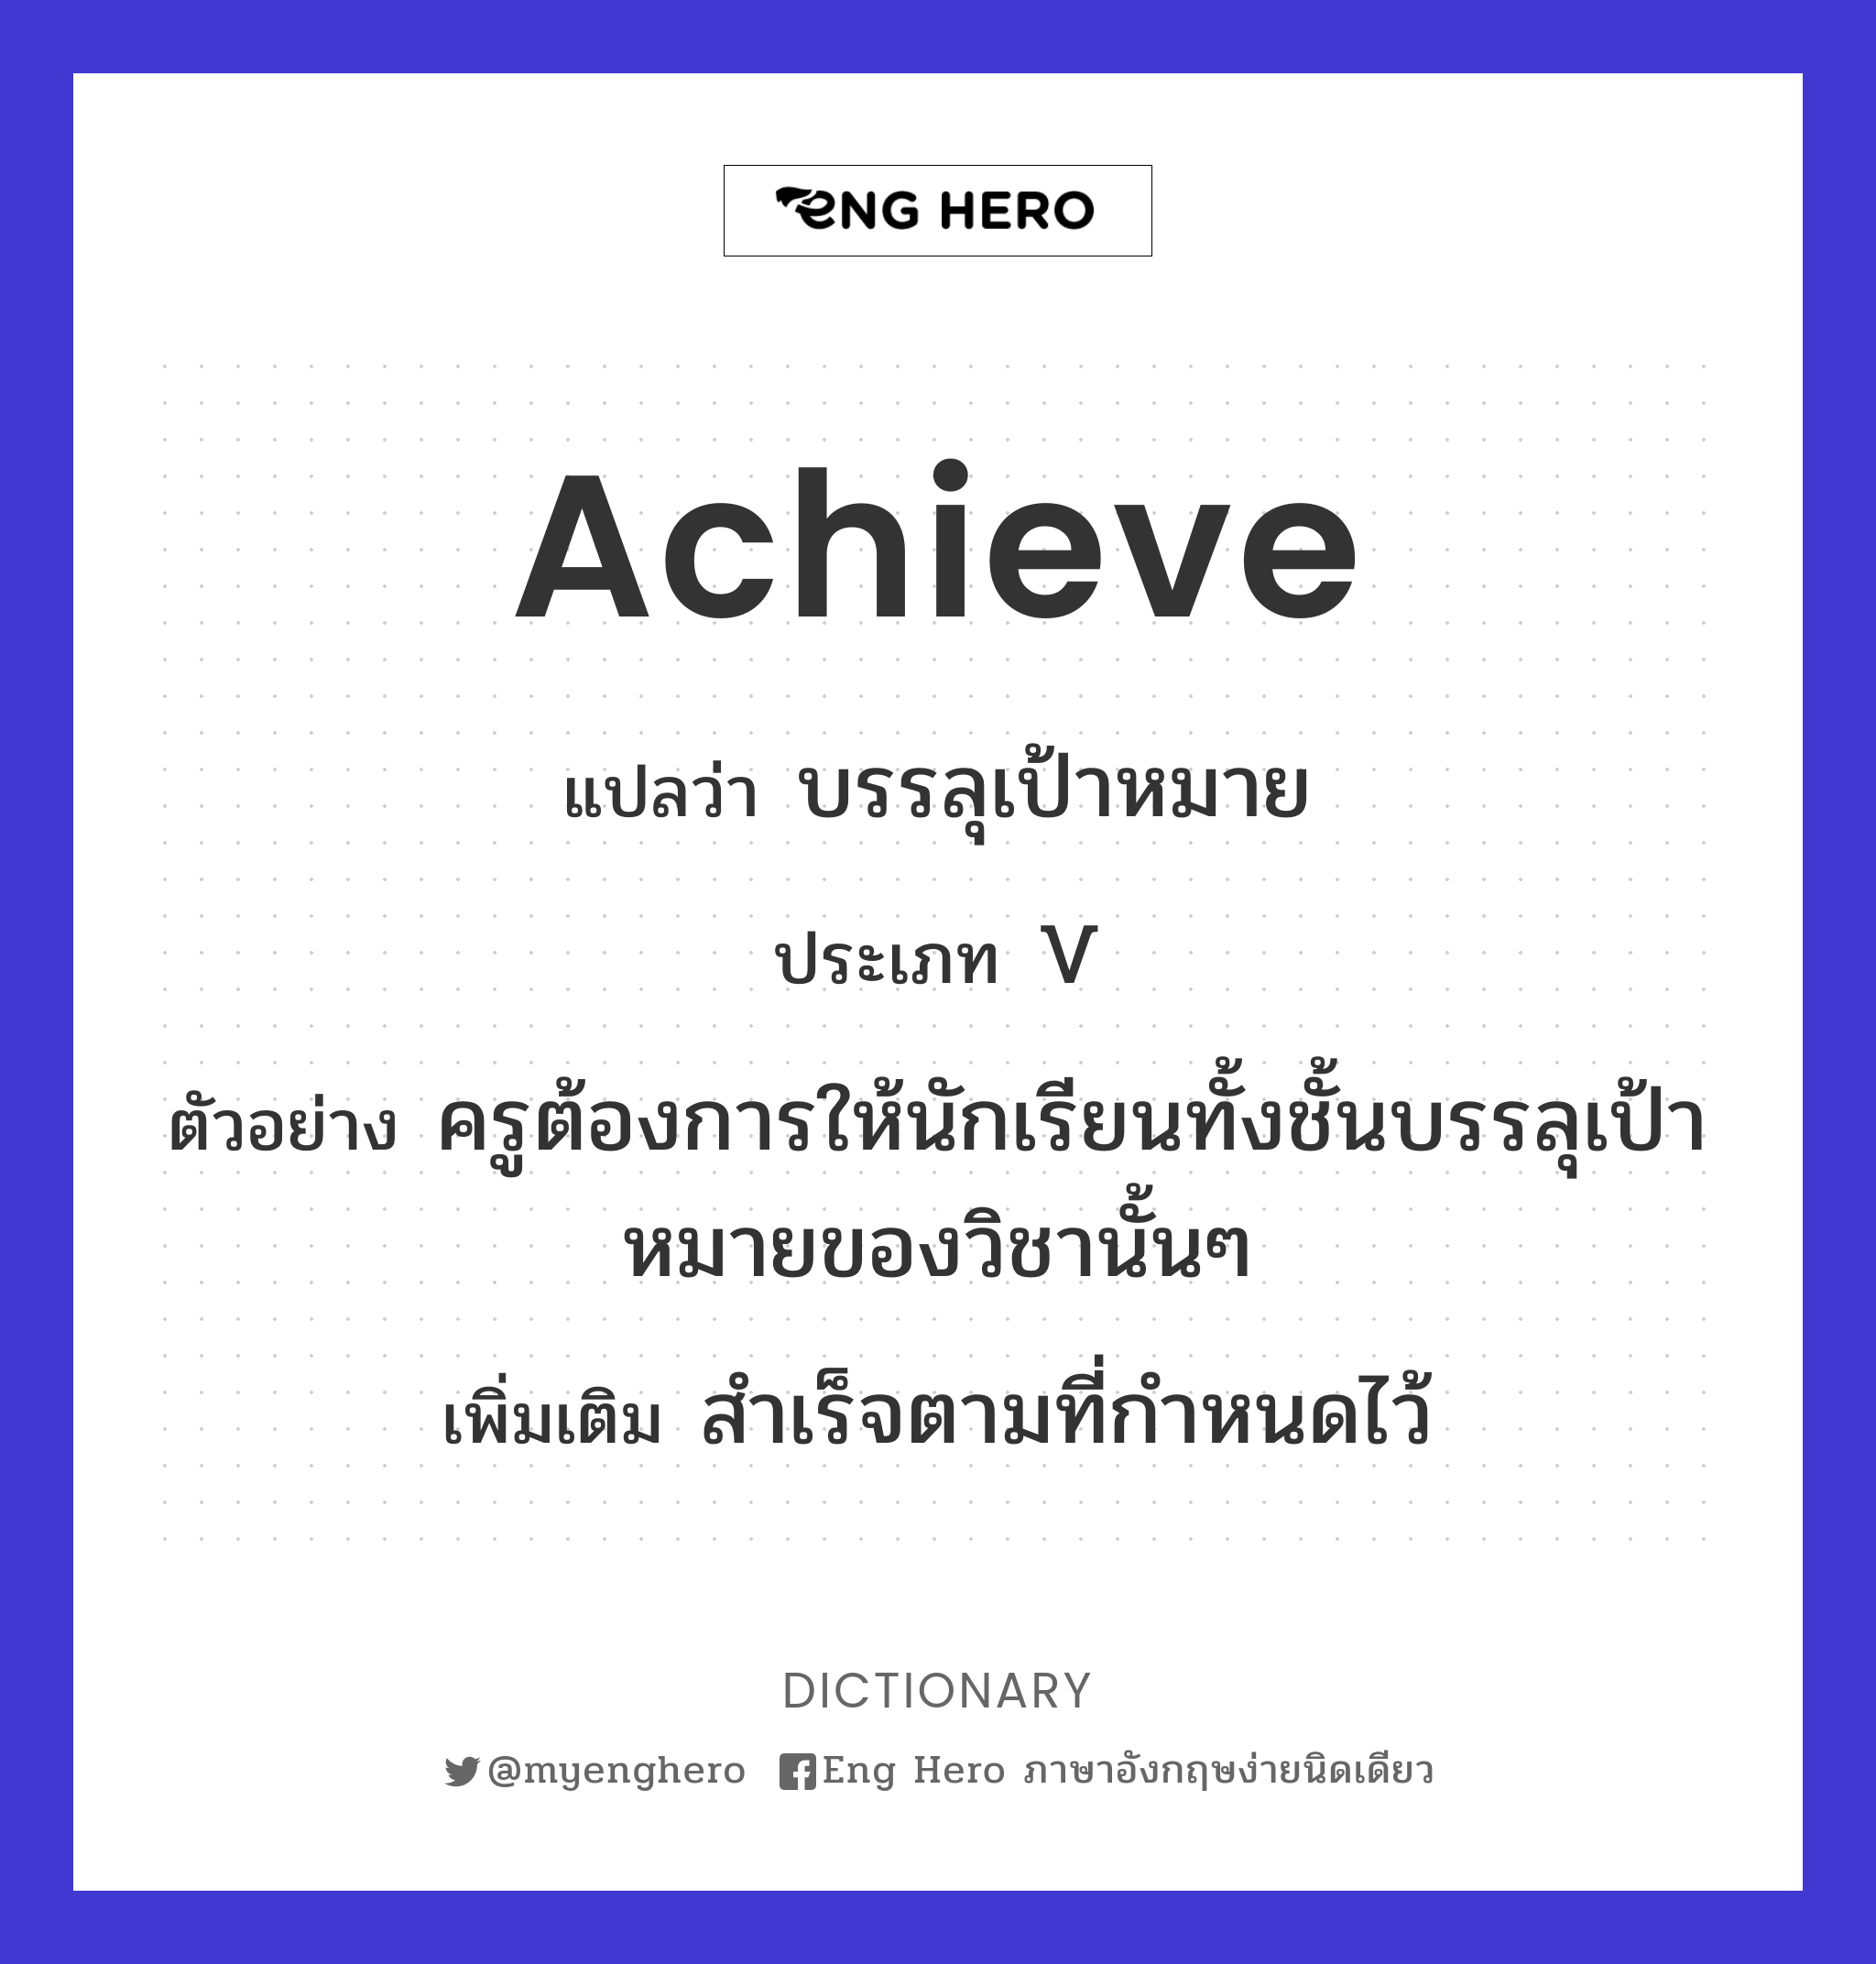 achieve